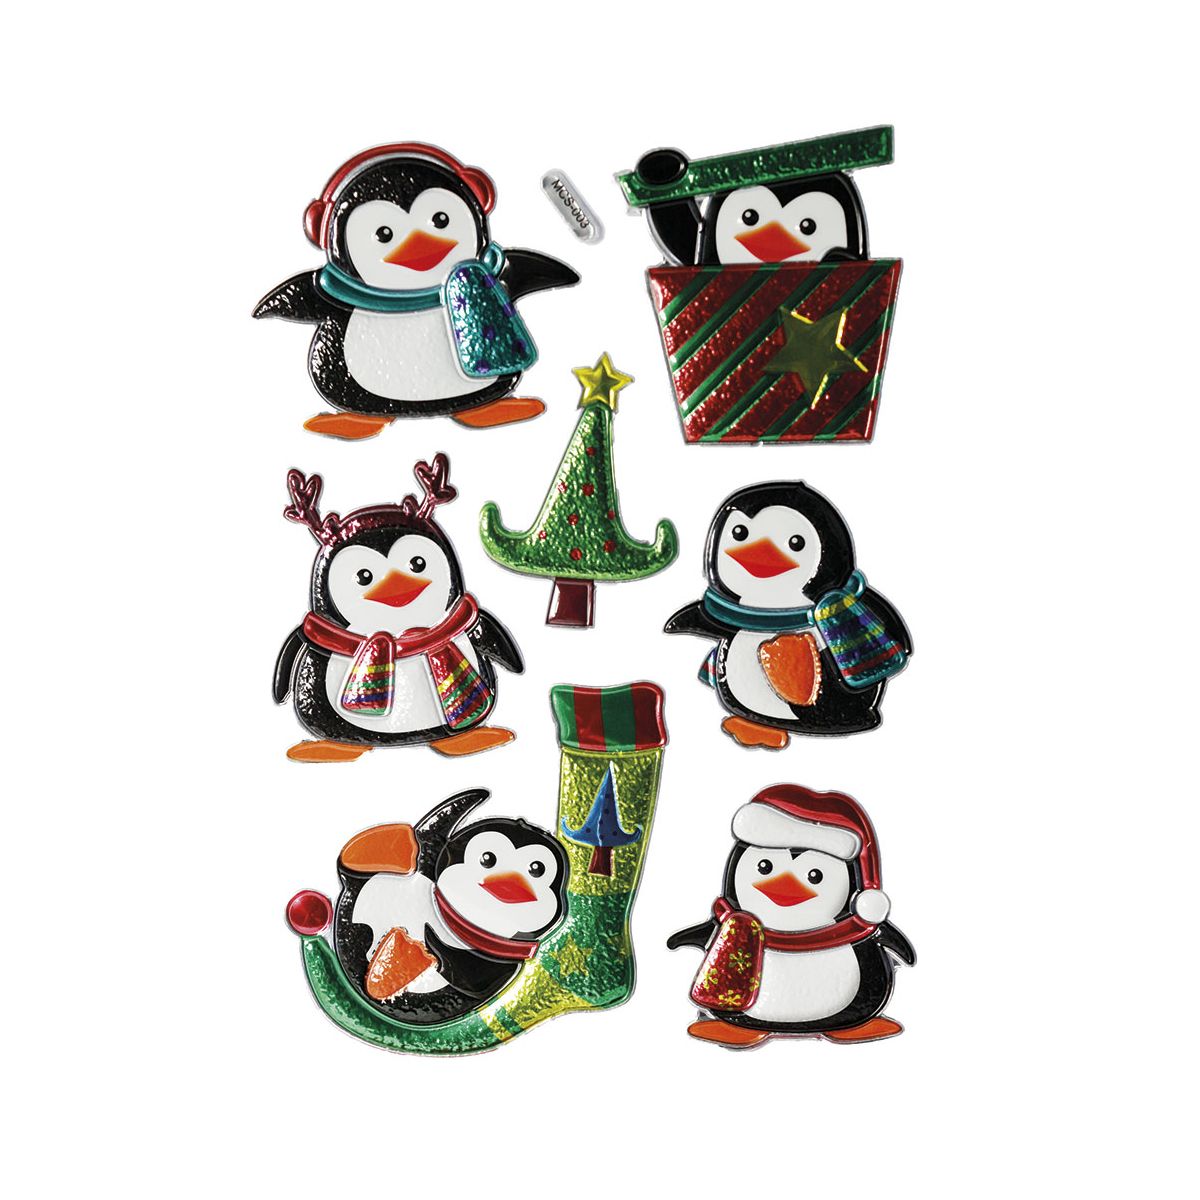 Naklejka (nalepka) Craft-Fun Series Boże Narodzenie Titanum (pingwiny)